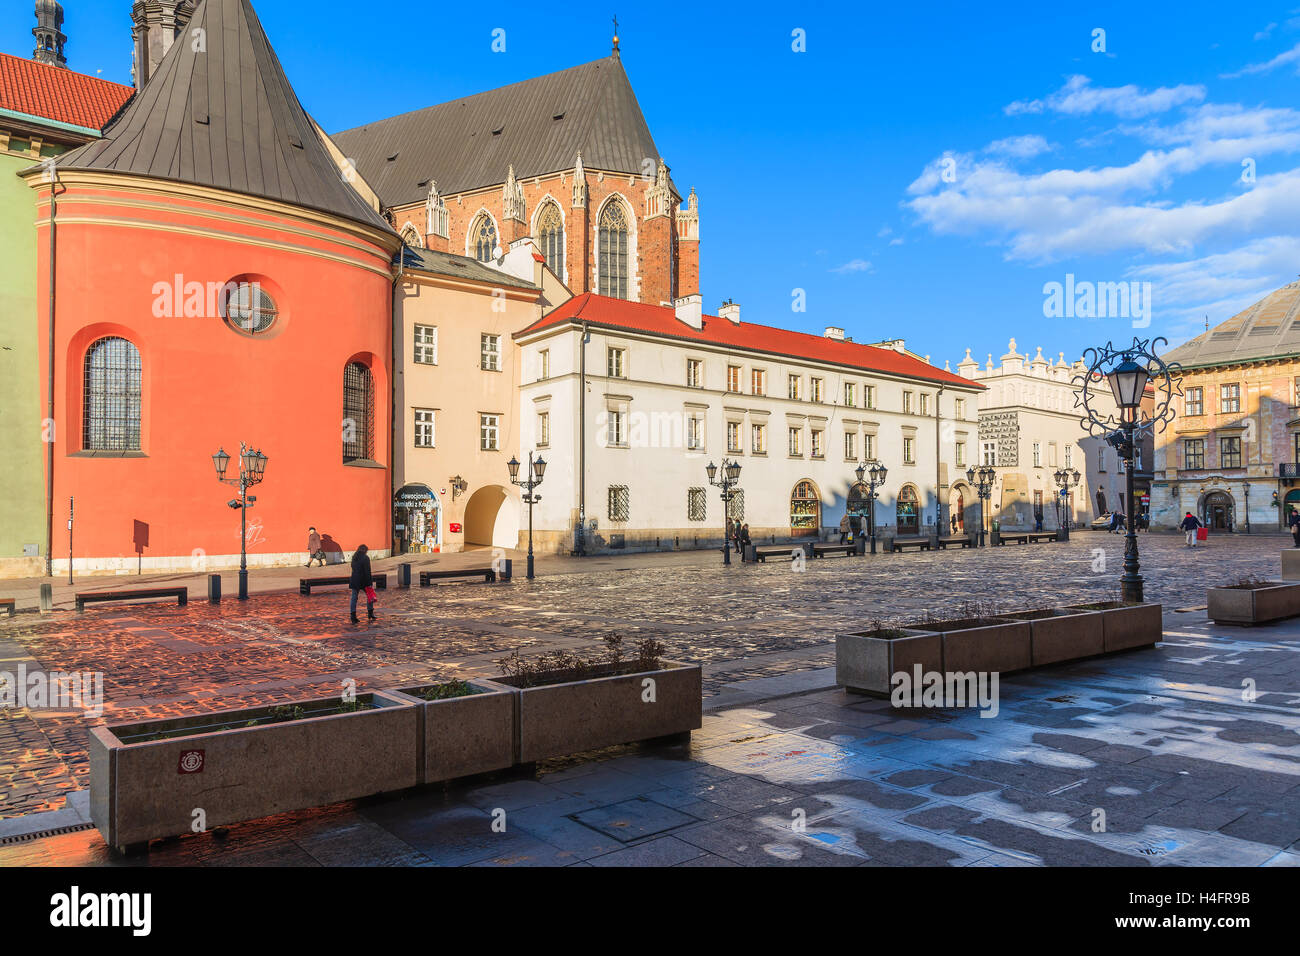 Cracovia in Polonia - Dic 12, 2014: Mariacki chiesa e case colorate sulla piazza del mercato di Cracovia (Maly Rynek). Questo è più spesso visitato la città in Polonia tra i turisti stranieri. Foto Stock